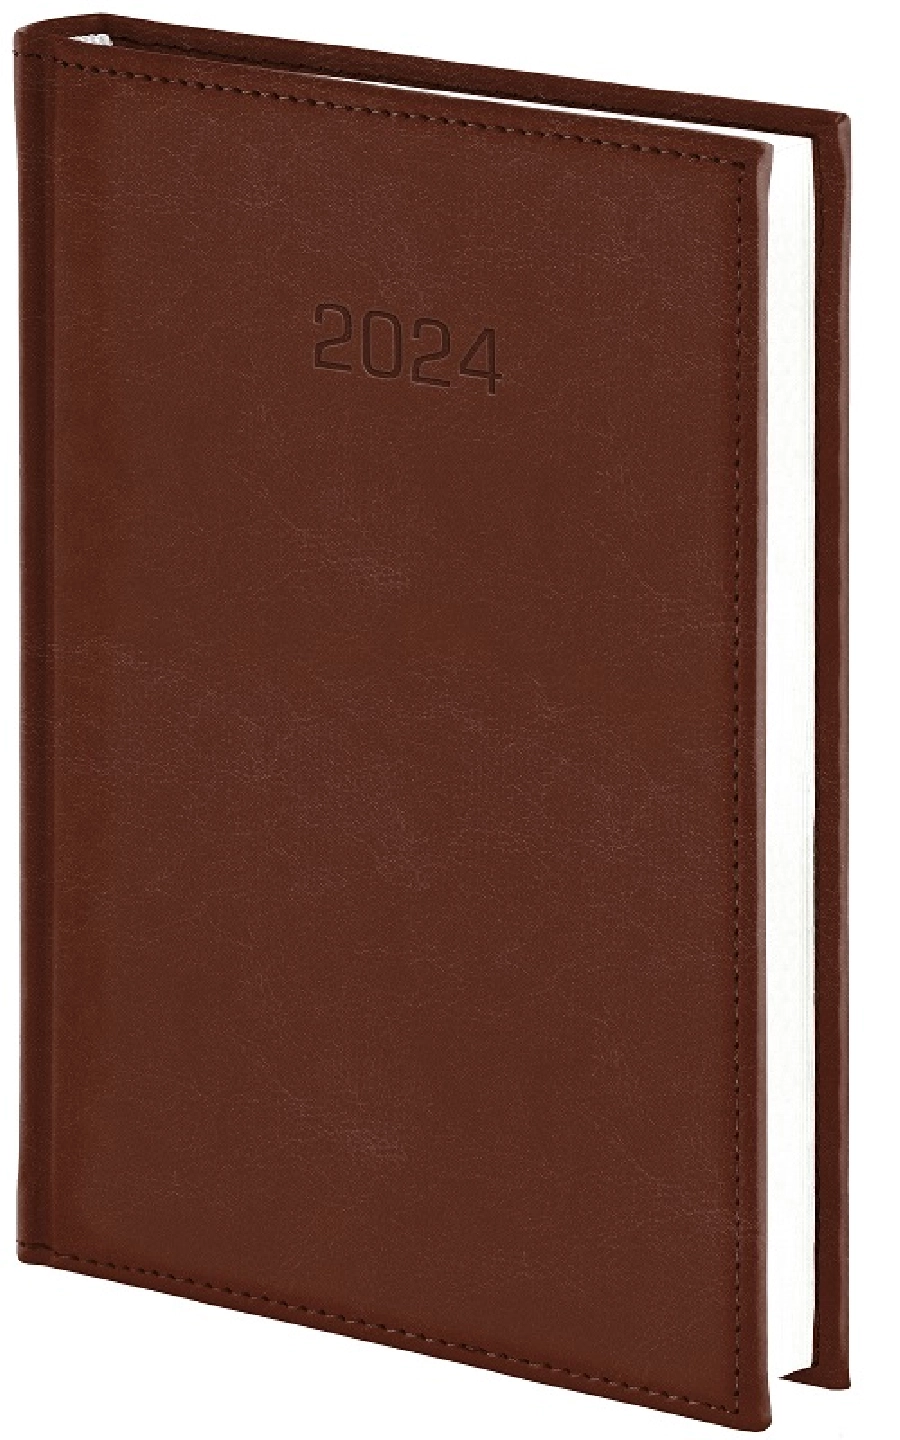 Nebraska kalendarz książkowy 2024 dzienny A5 GR-159248 brązowy